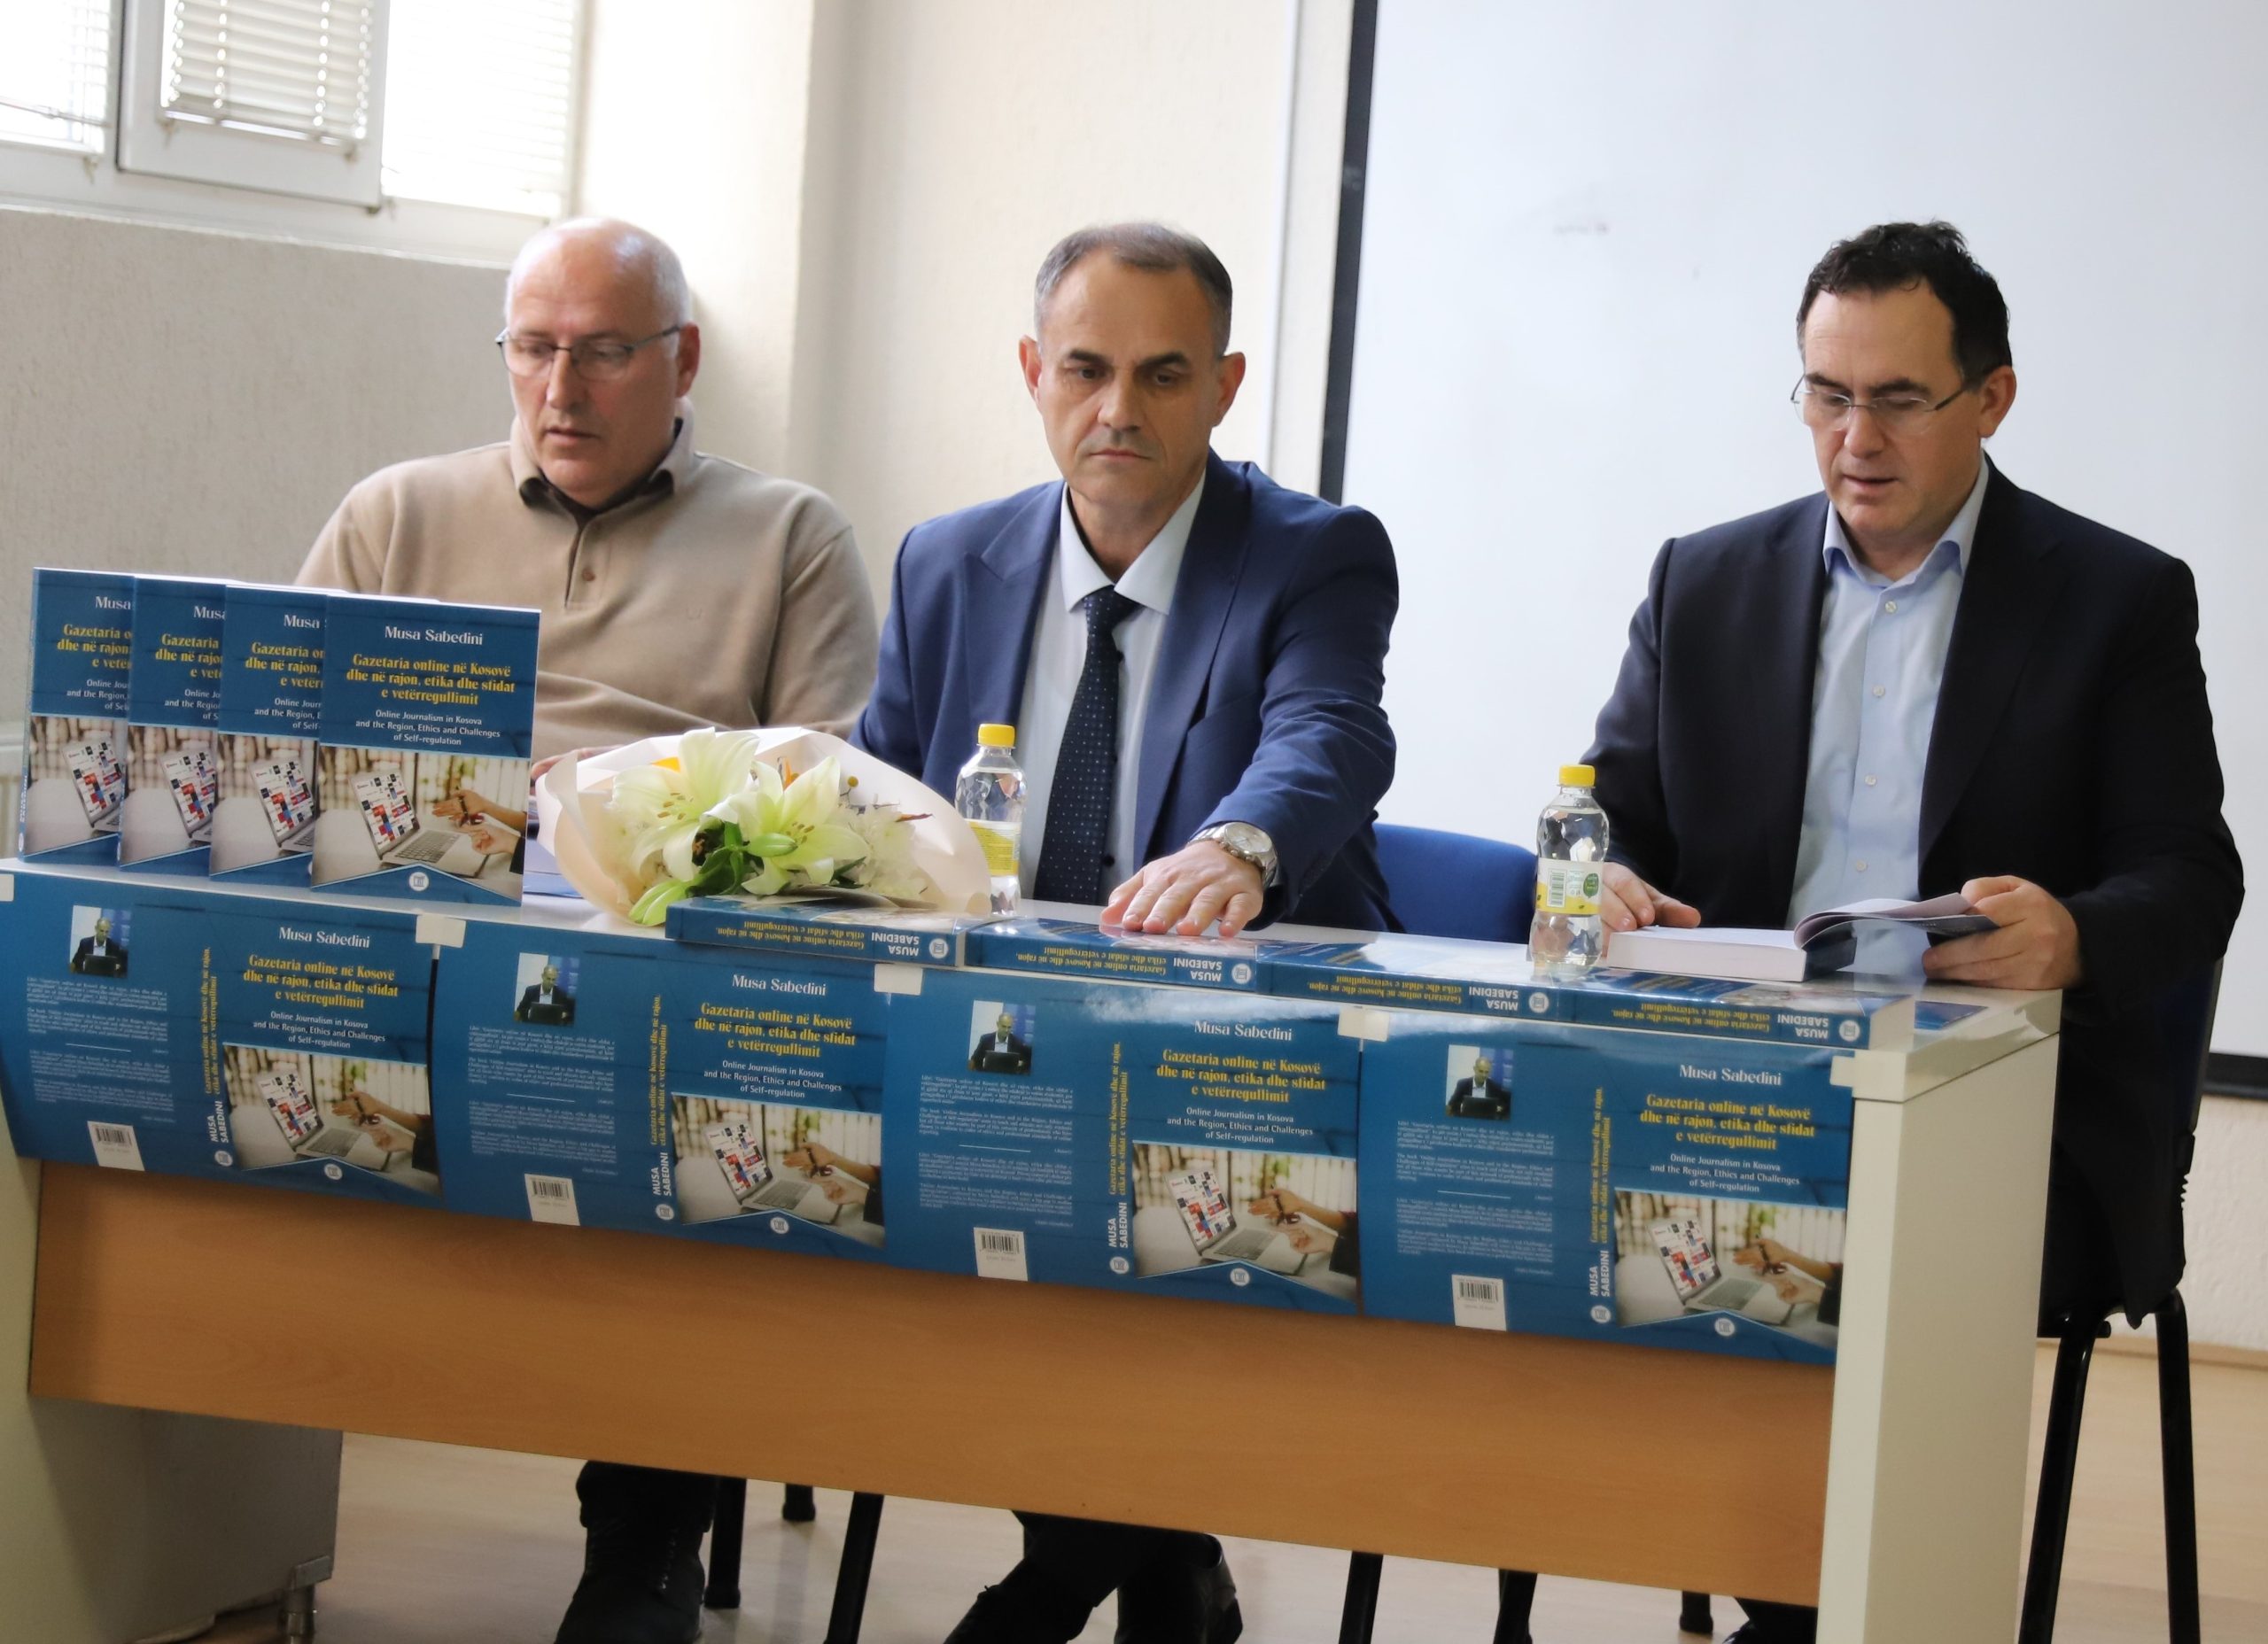 Në UBT promovohet libri “Gazetaria Online në Kosovë dhe në rajon, etika dhe sfidat e vetërregullimit”, i autorit Musa Sabedini – një libër voluminoz për fushën e gazetarisë